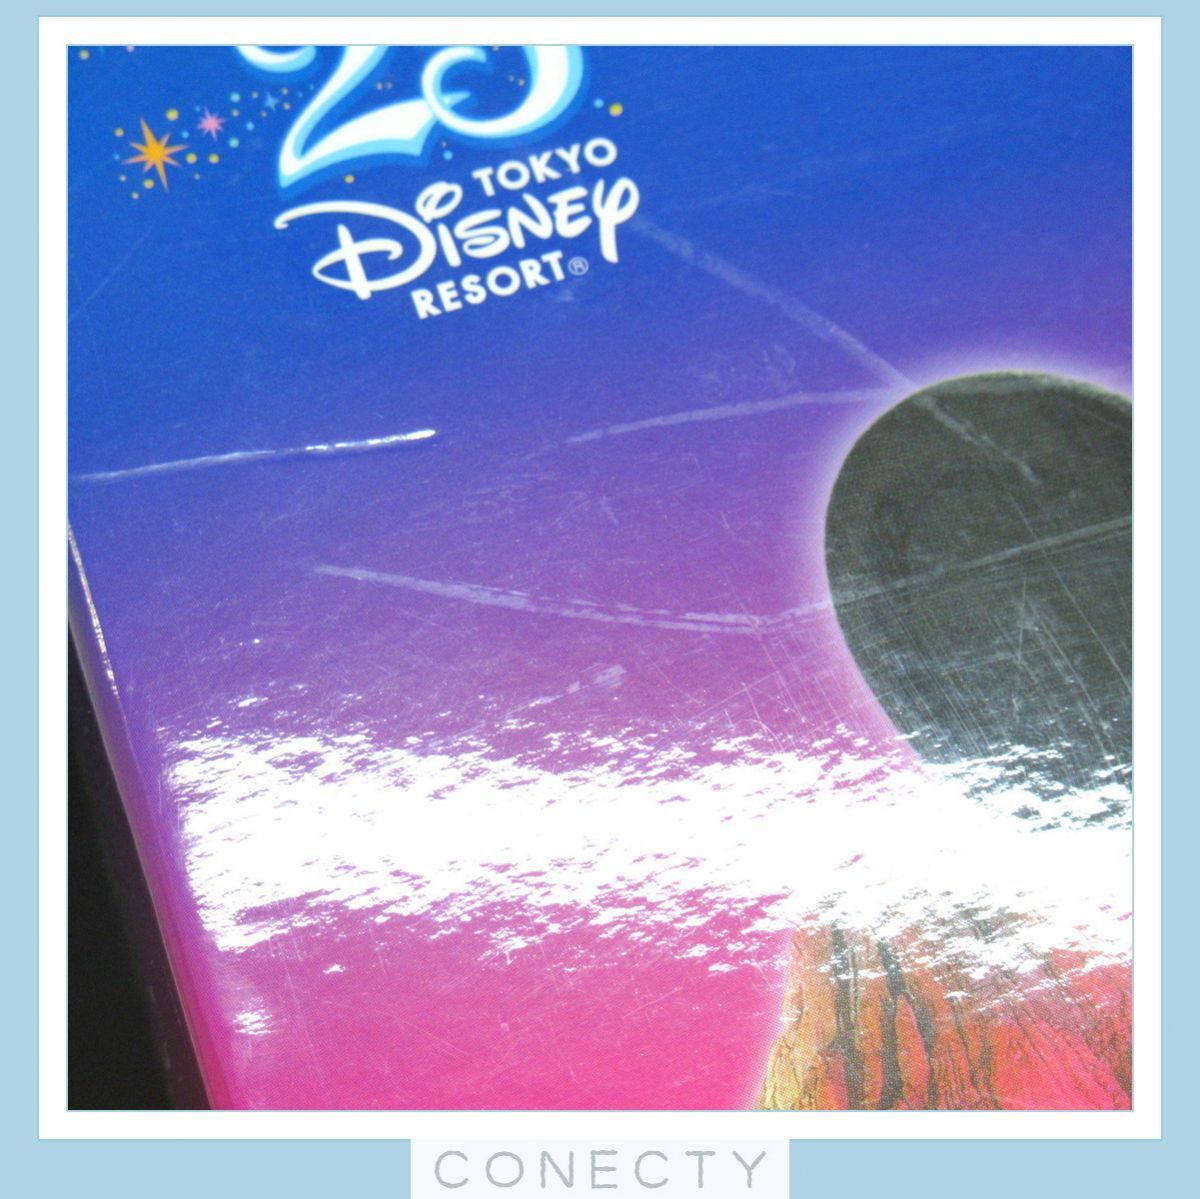 CD Tokyo Disney resort музыка * коллекция Dream CD12 листов комплект [S2[S2